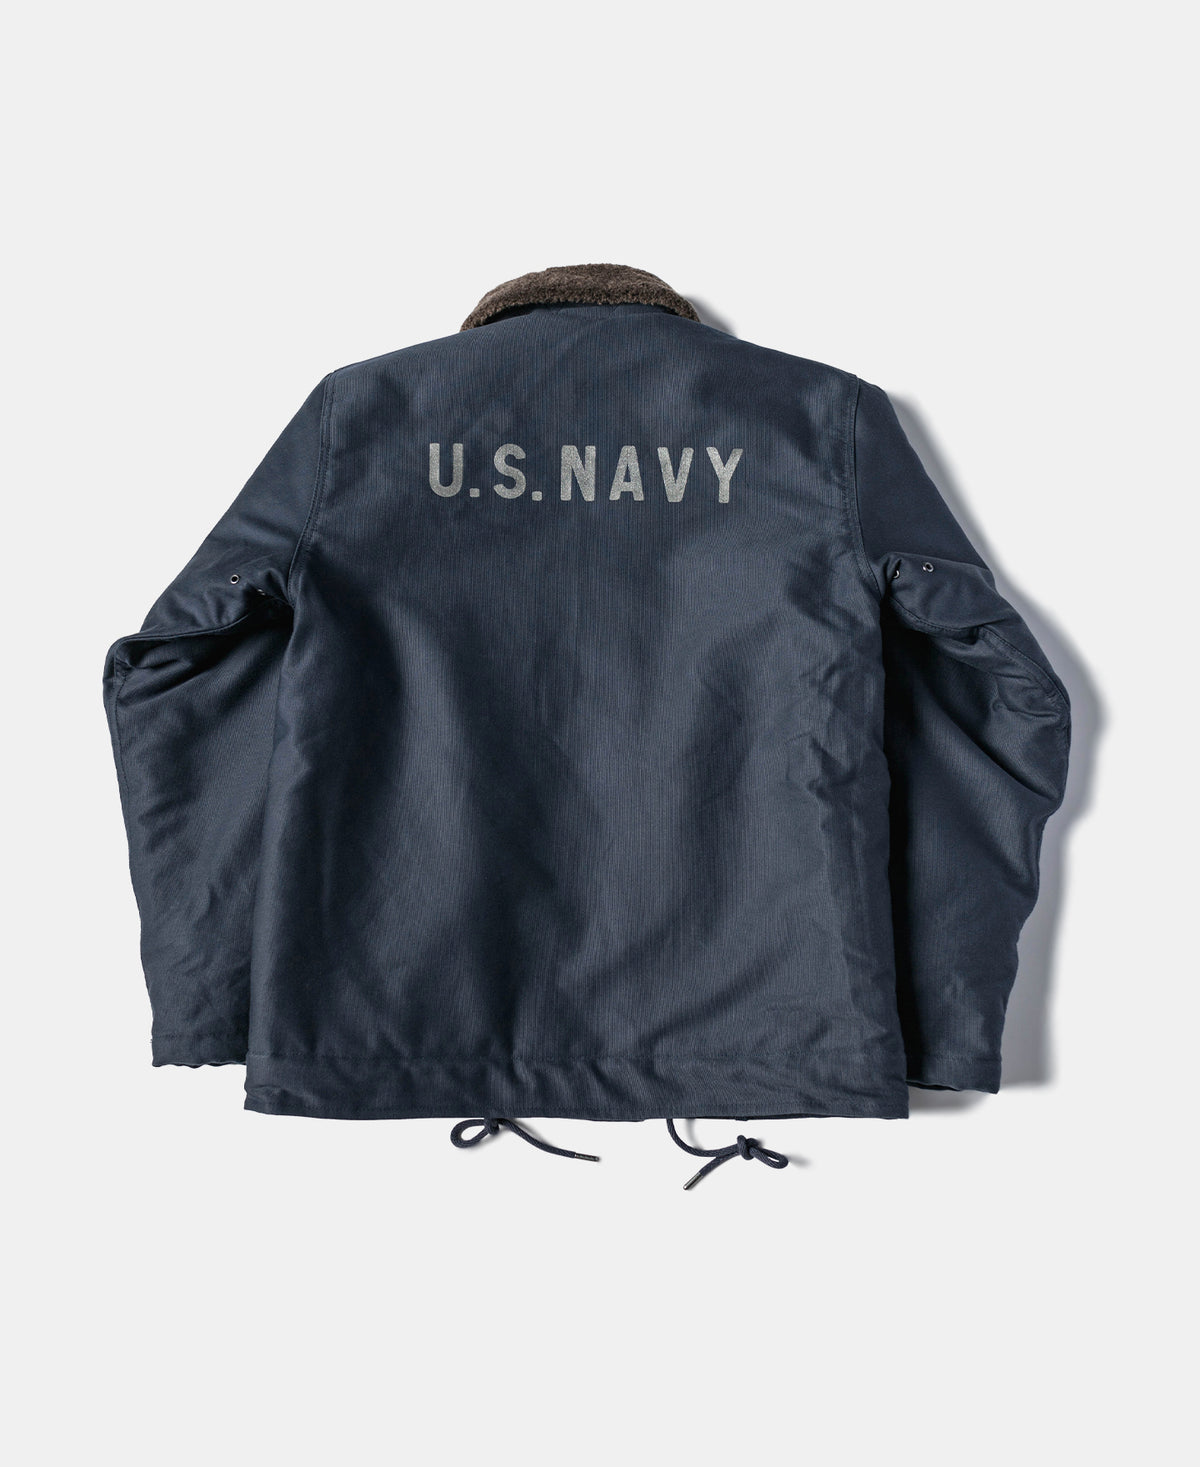 1943 US Navy 1st N-1 Woolen Deck Jacket - Navy Stencil